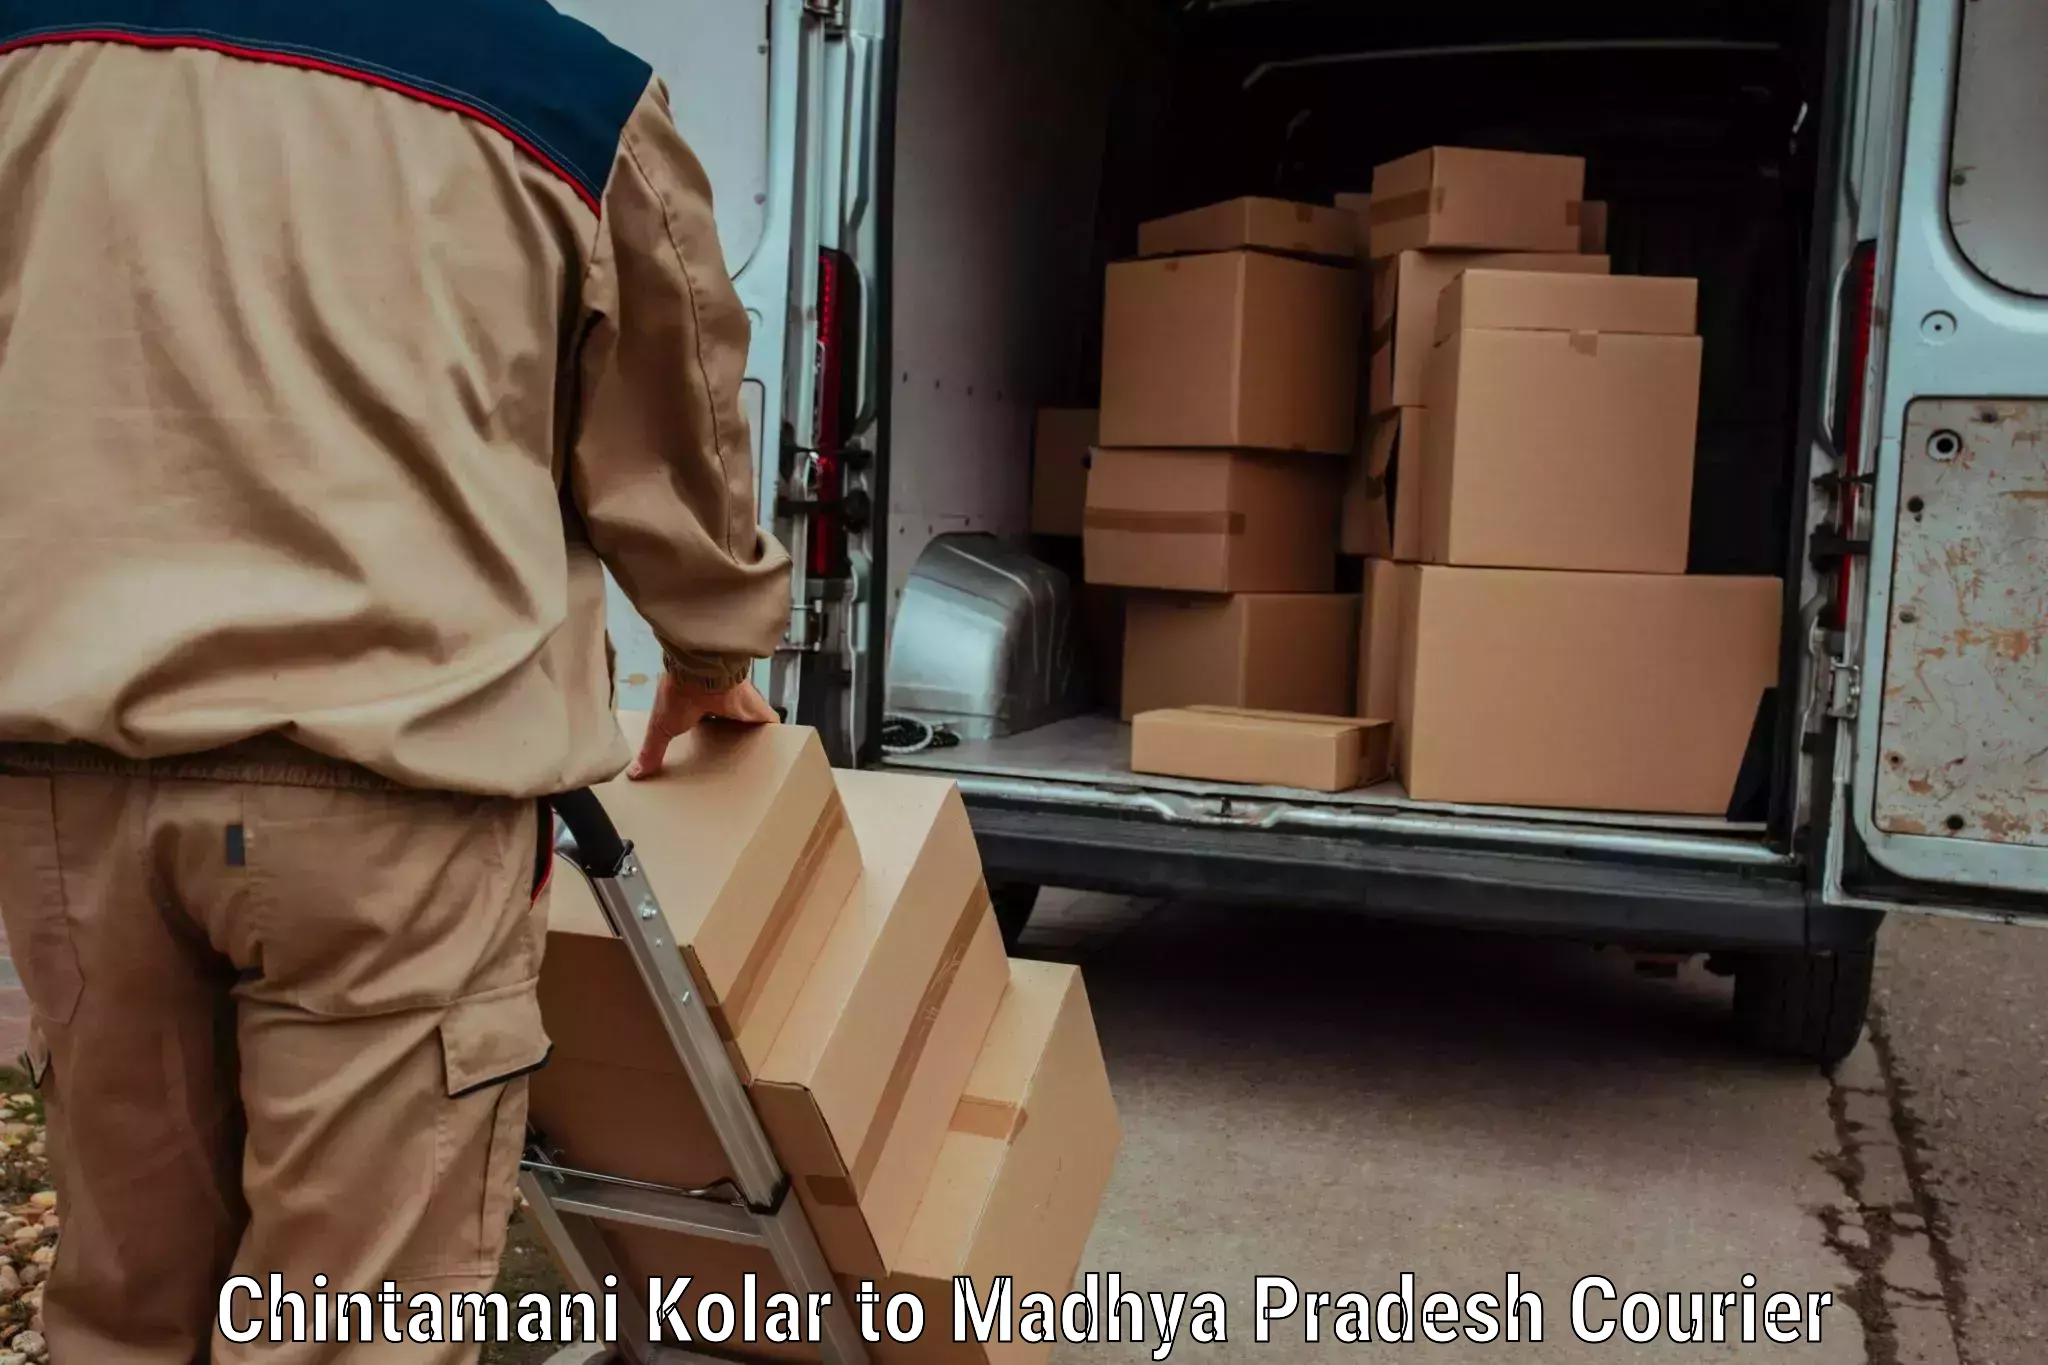 Express postal services Chintamani Kolar to Mundi